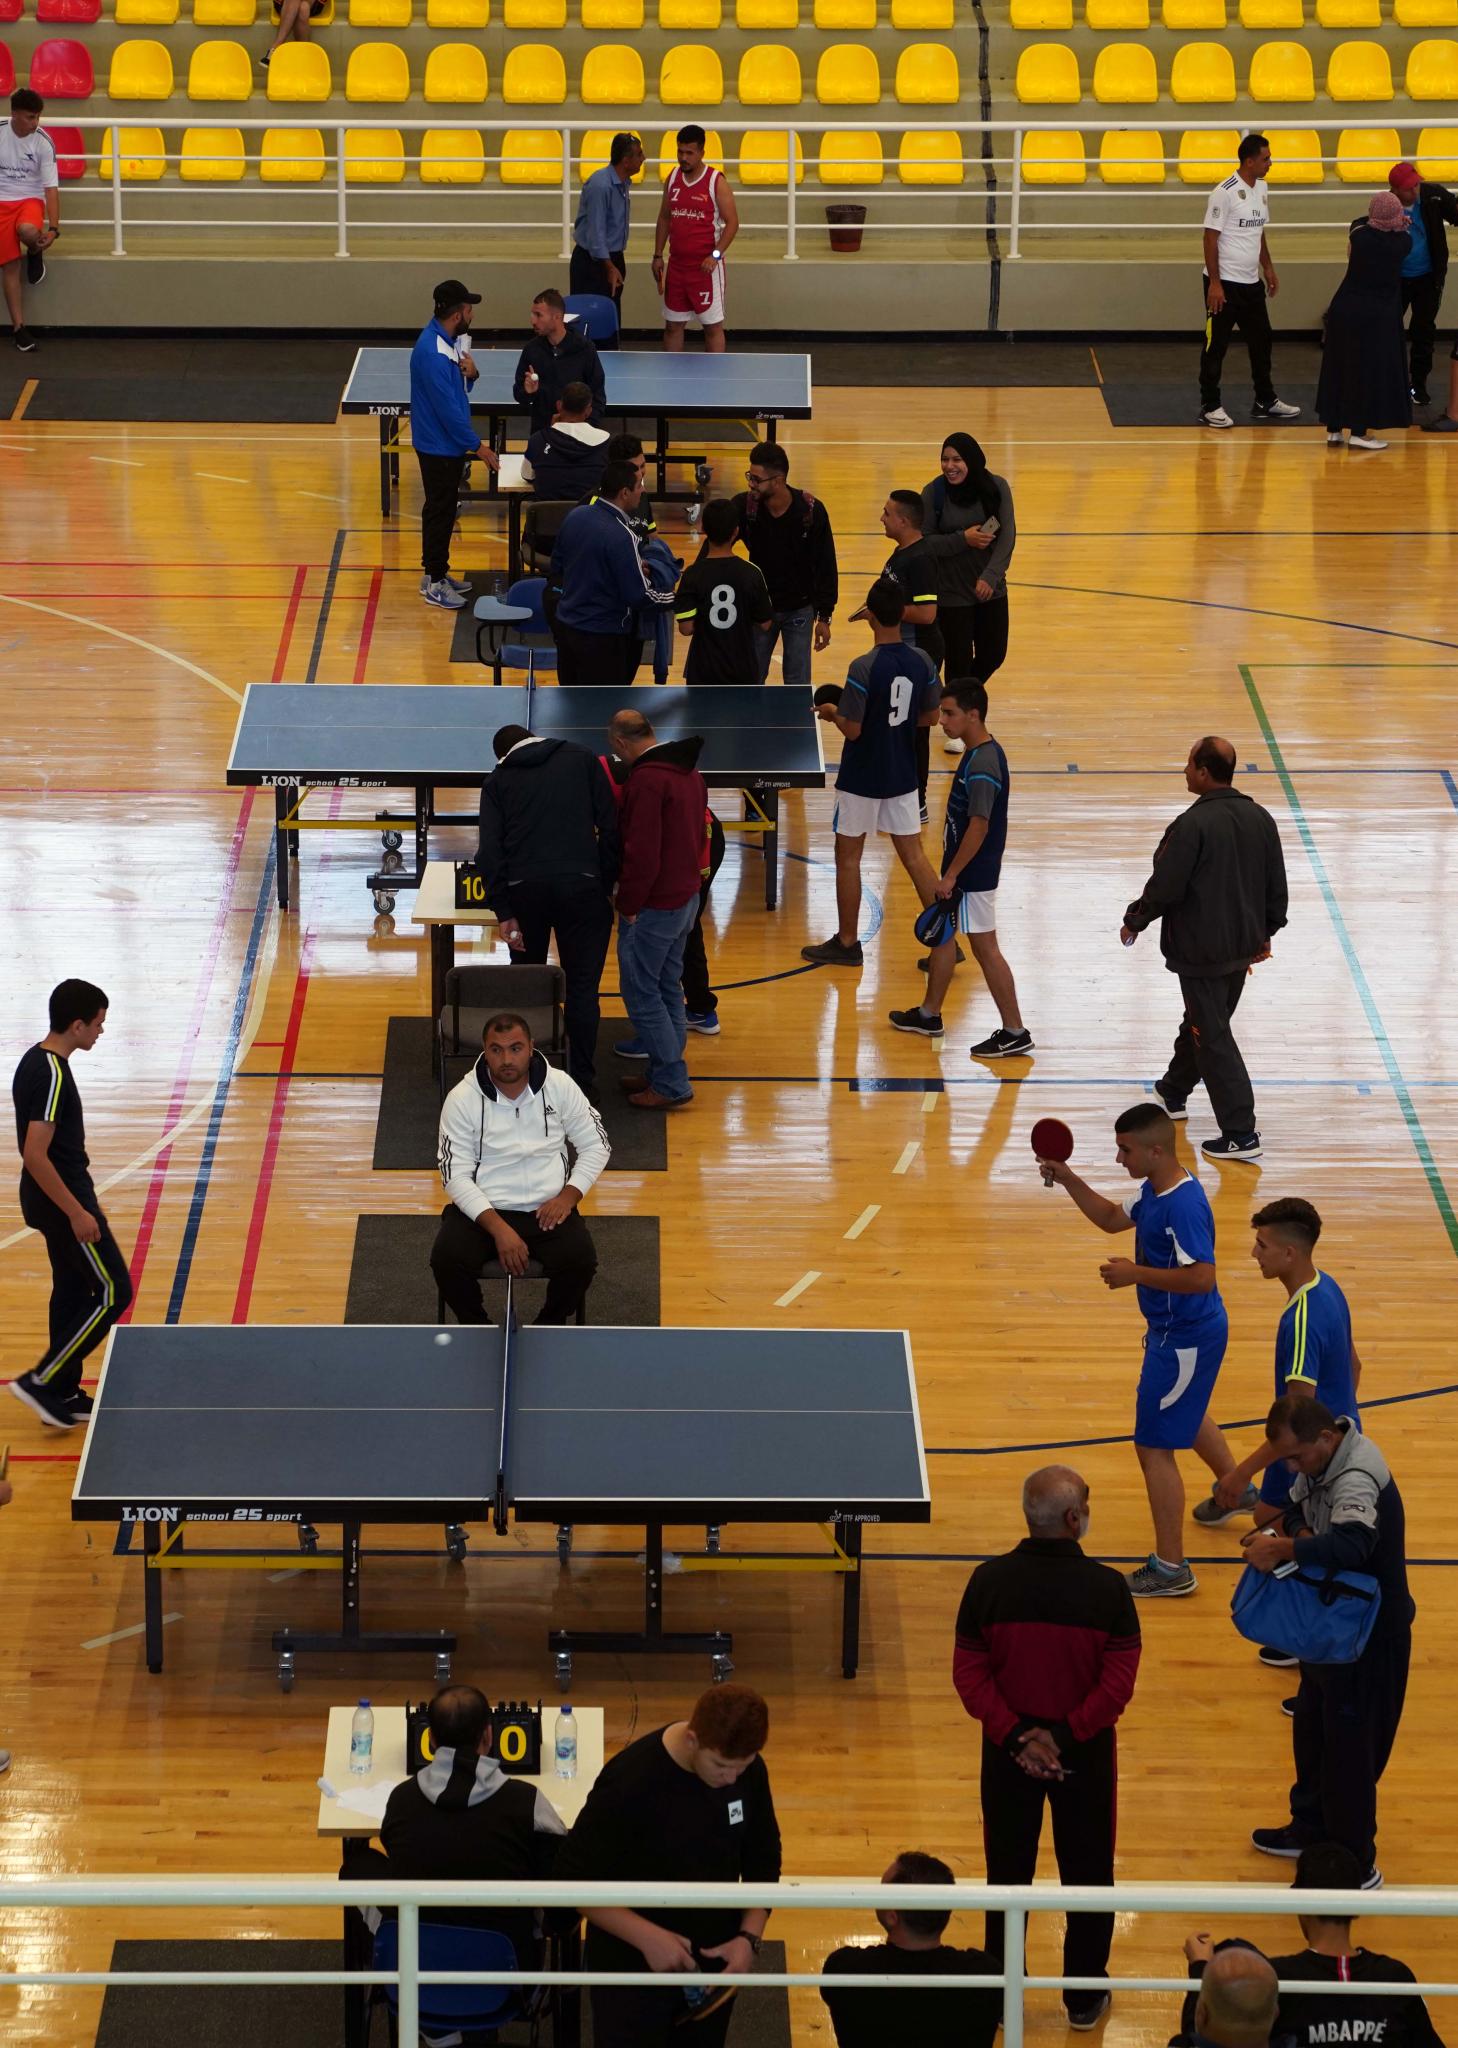 الجامعة تستضيف بطولة تنس الطاولة للذكور والإناث